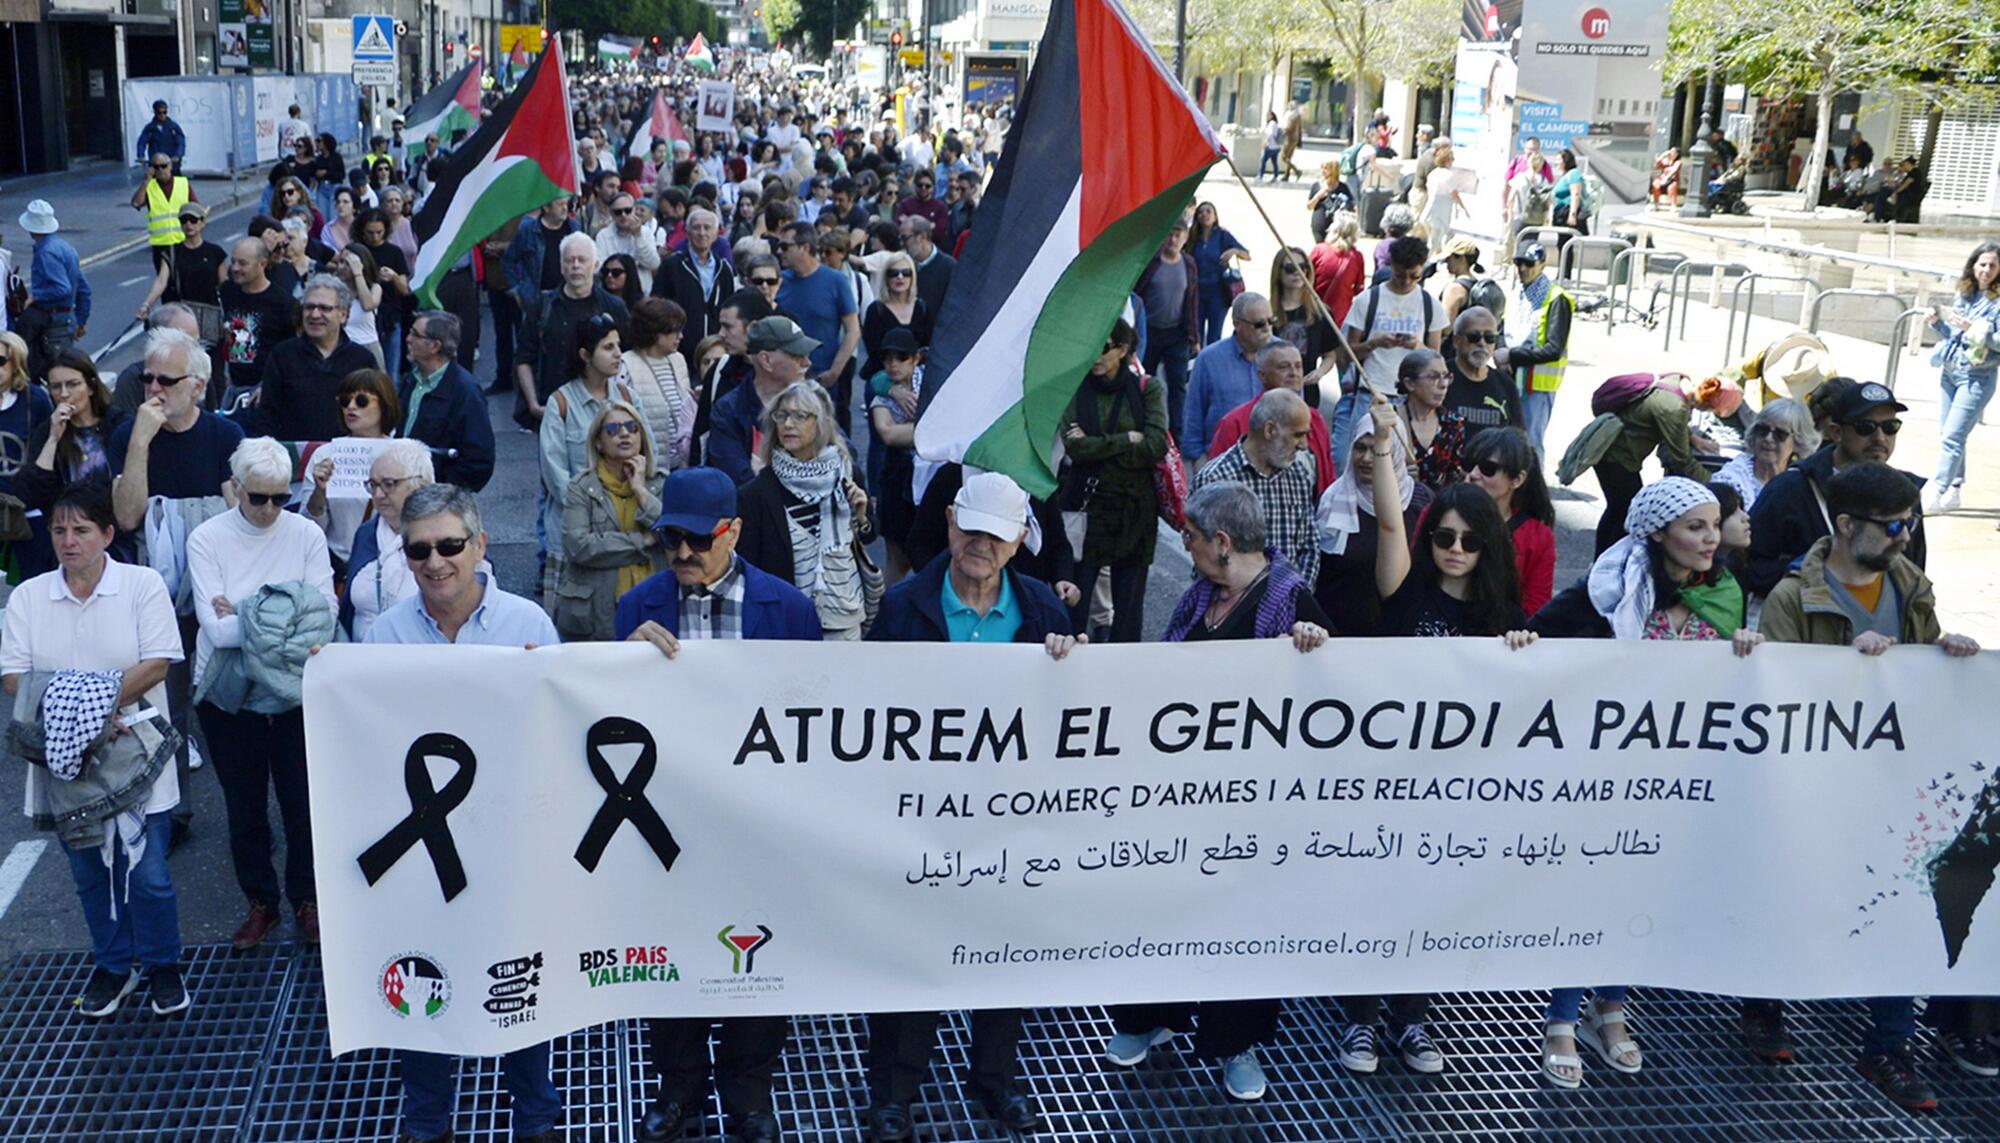 Manifestaciones País Valéncia solidaridad con Palestina 20-21 abril  - 2